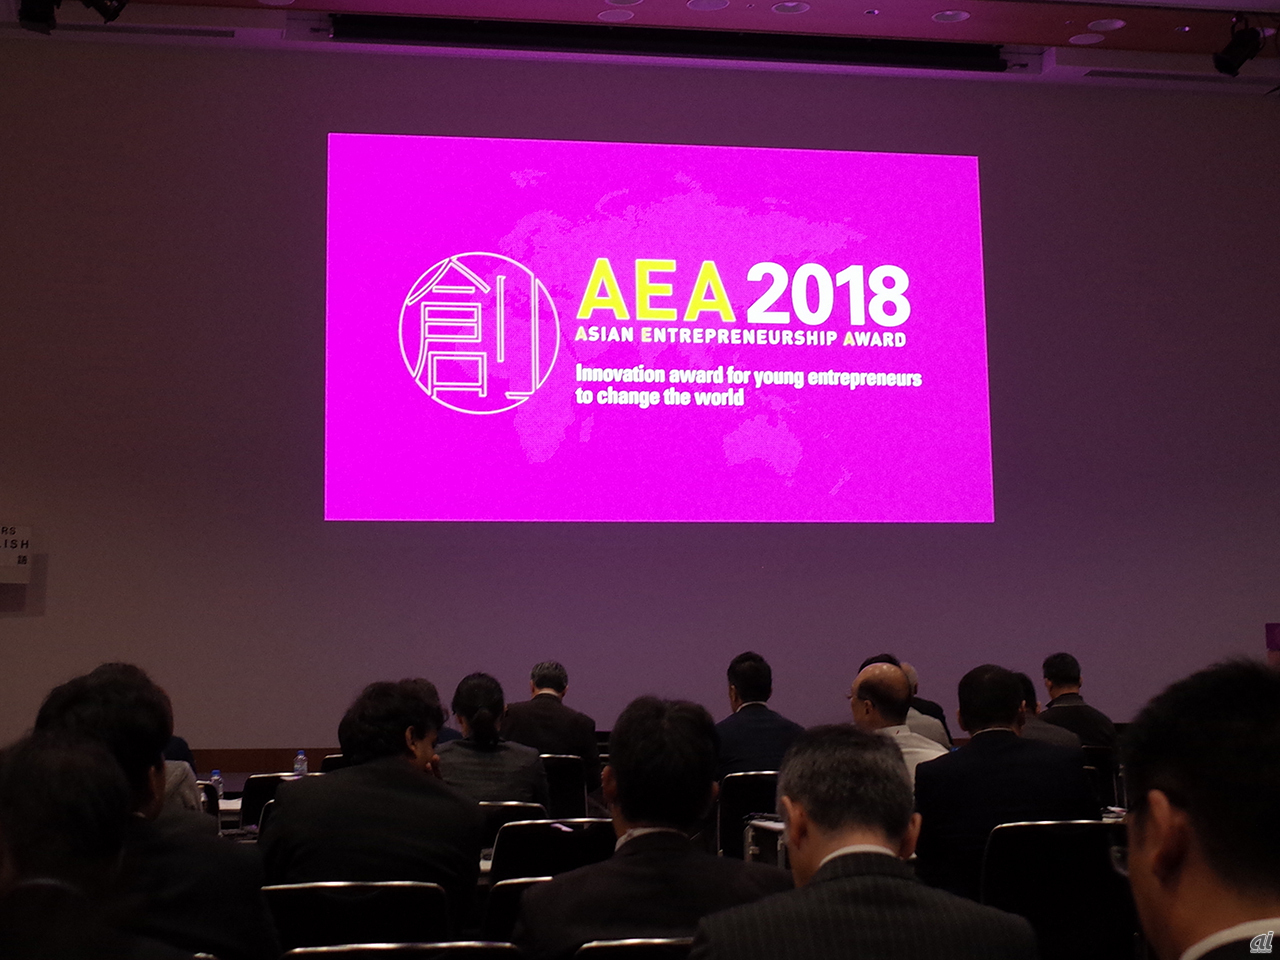 アジア・アントレプレナーシップ・アワード（AEA）2018が開催された